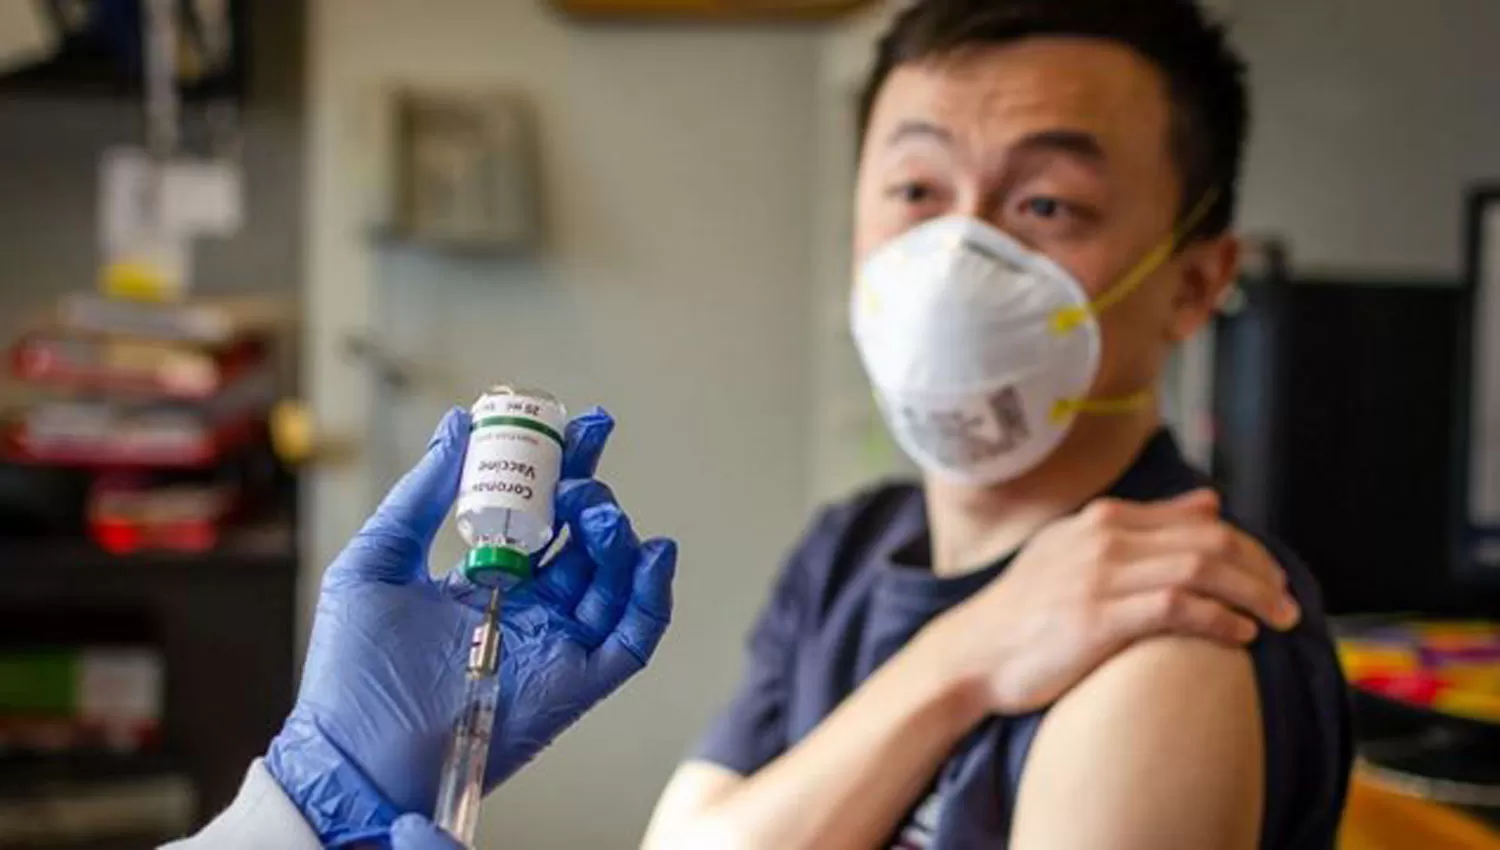 CALENDARIO COMPLETO. Los menores de 60 años son los más vacunados en China contra la covid-19.